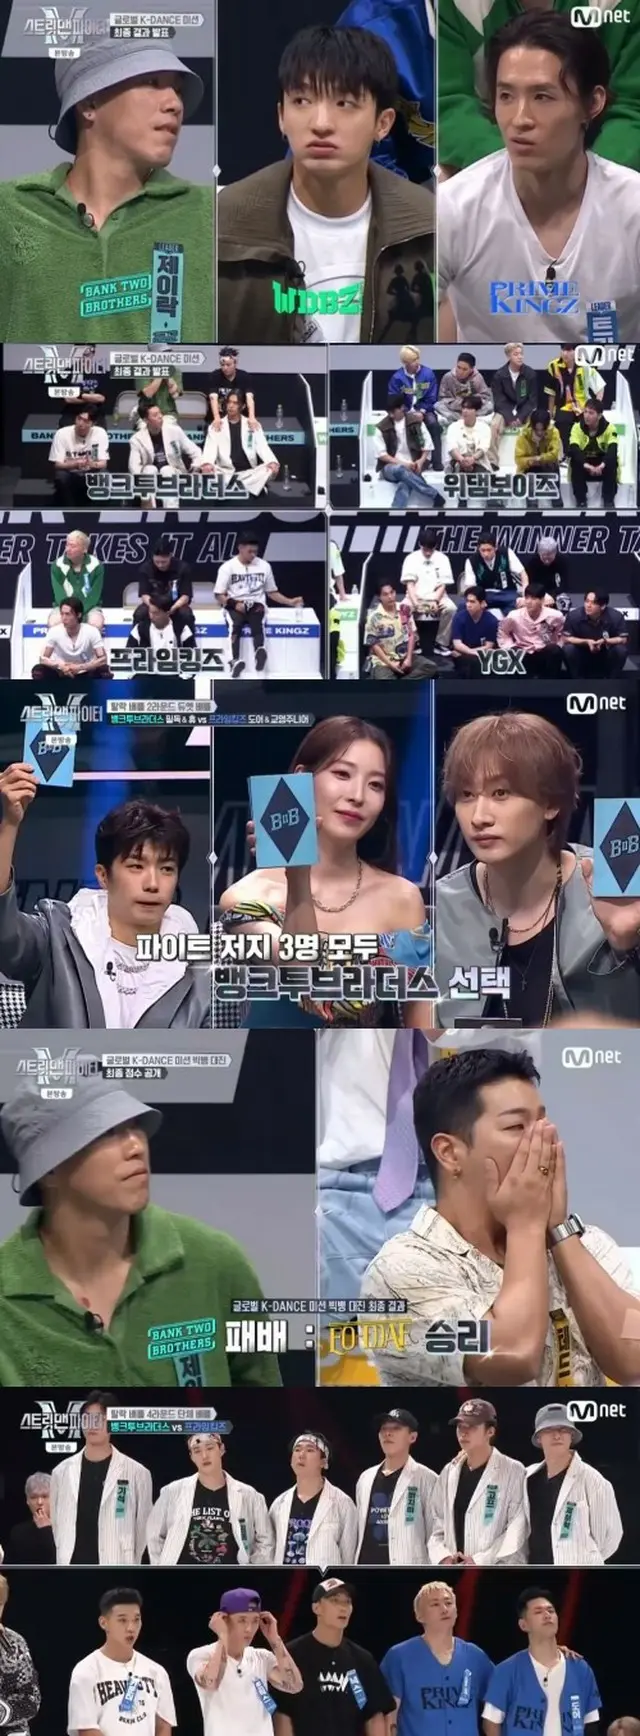 歌手BoA、Mnet「STREET MAN FIGHTER」の評価を巡って“インスタテロ”の被害に（画像提供:wowkorea）